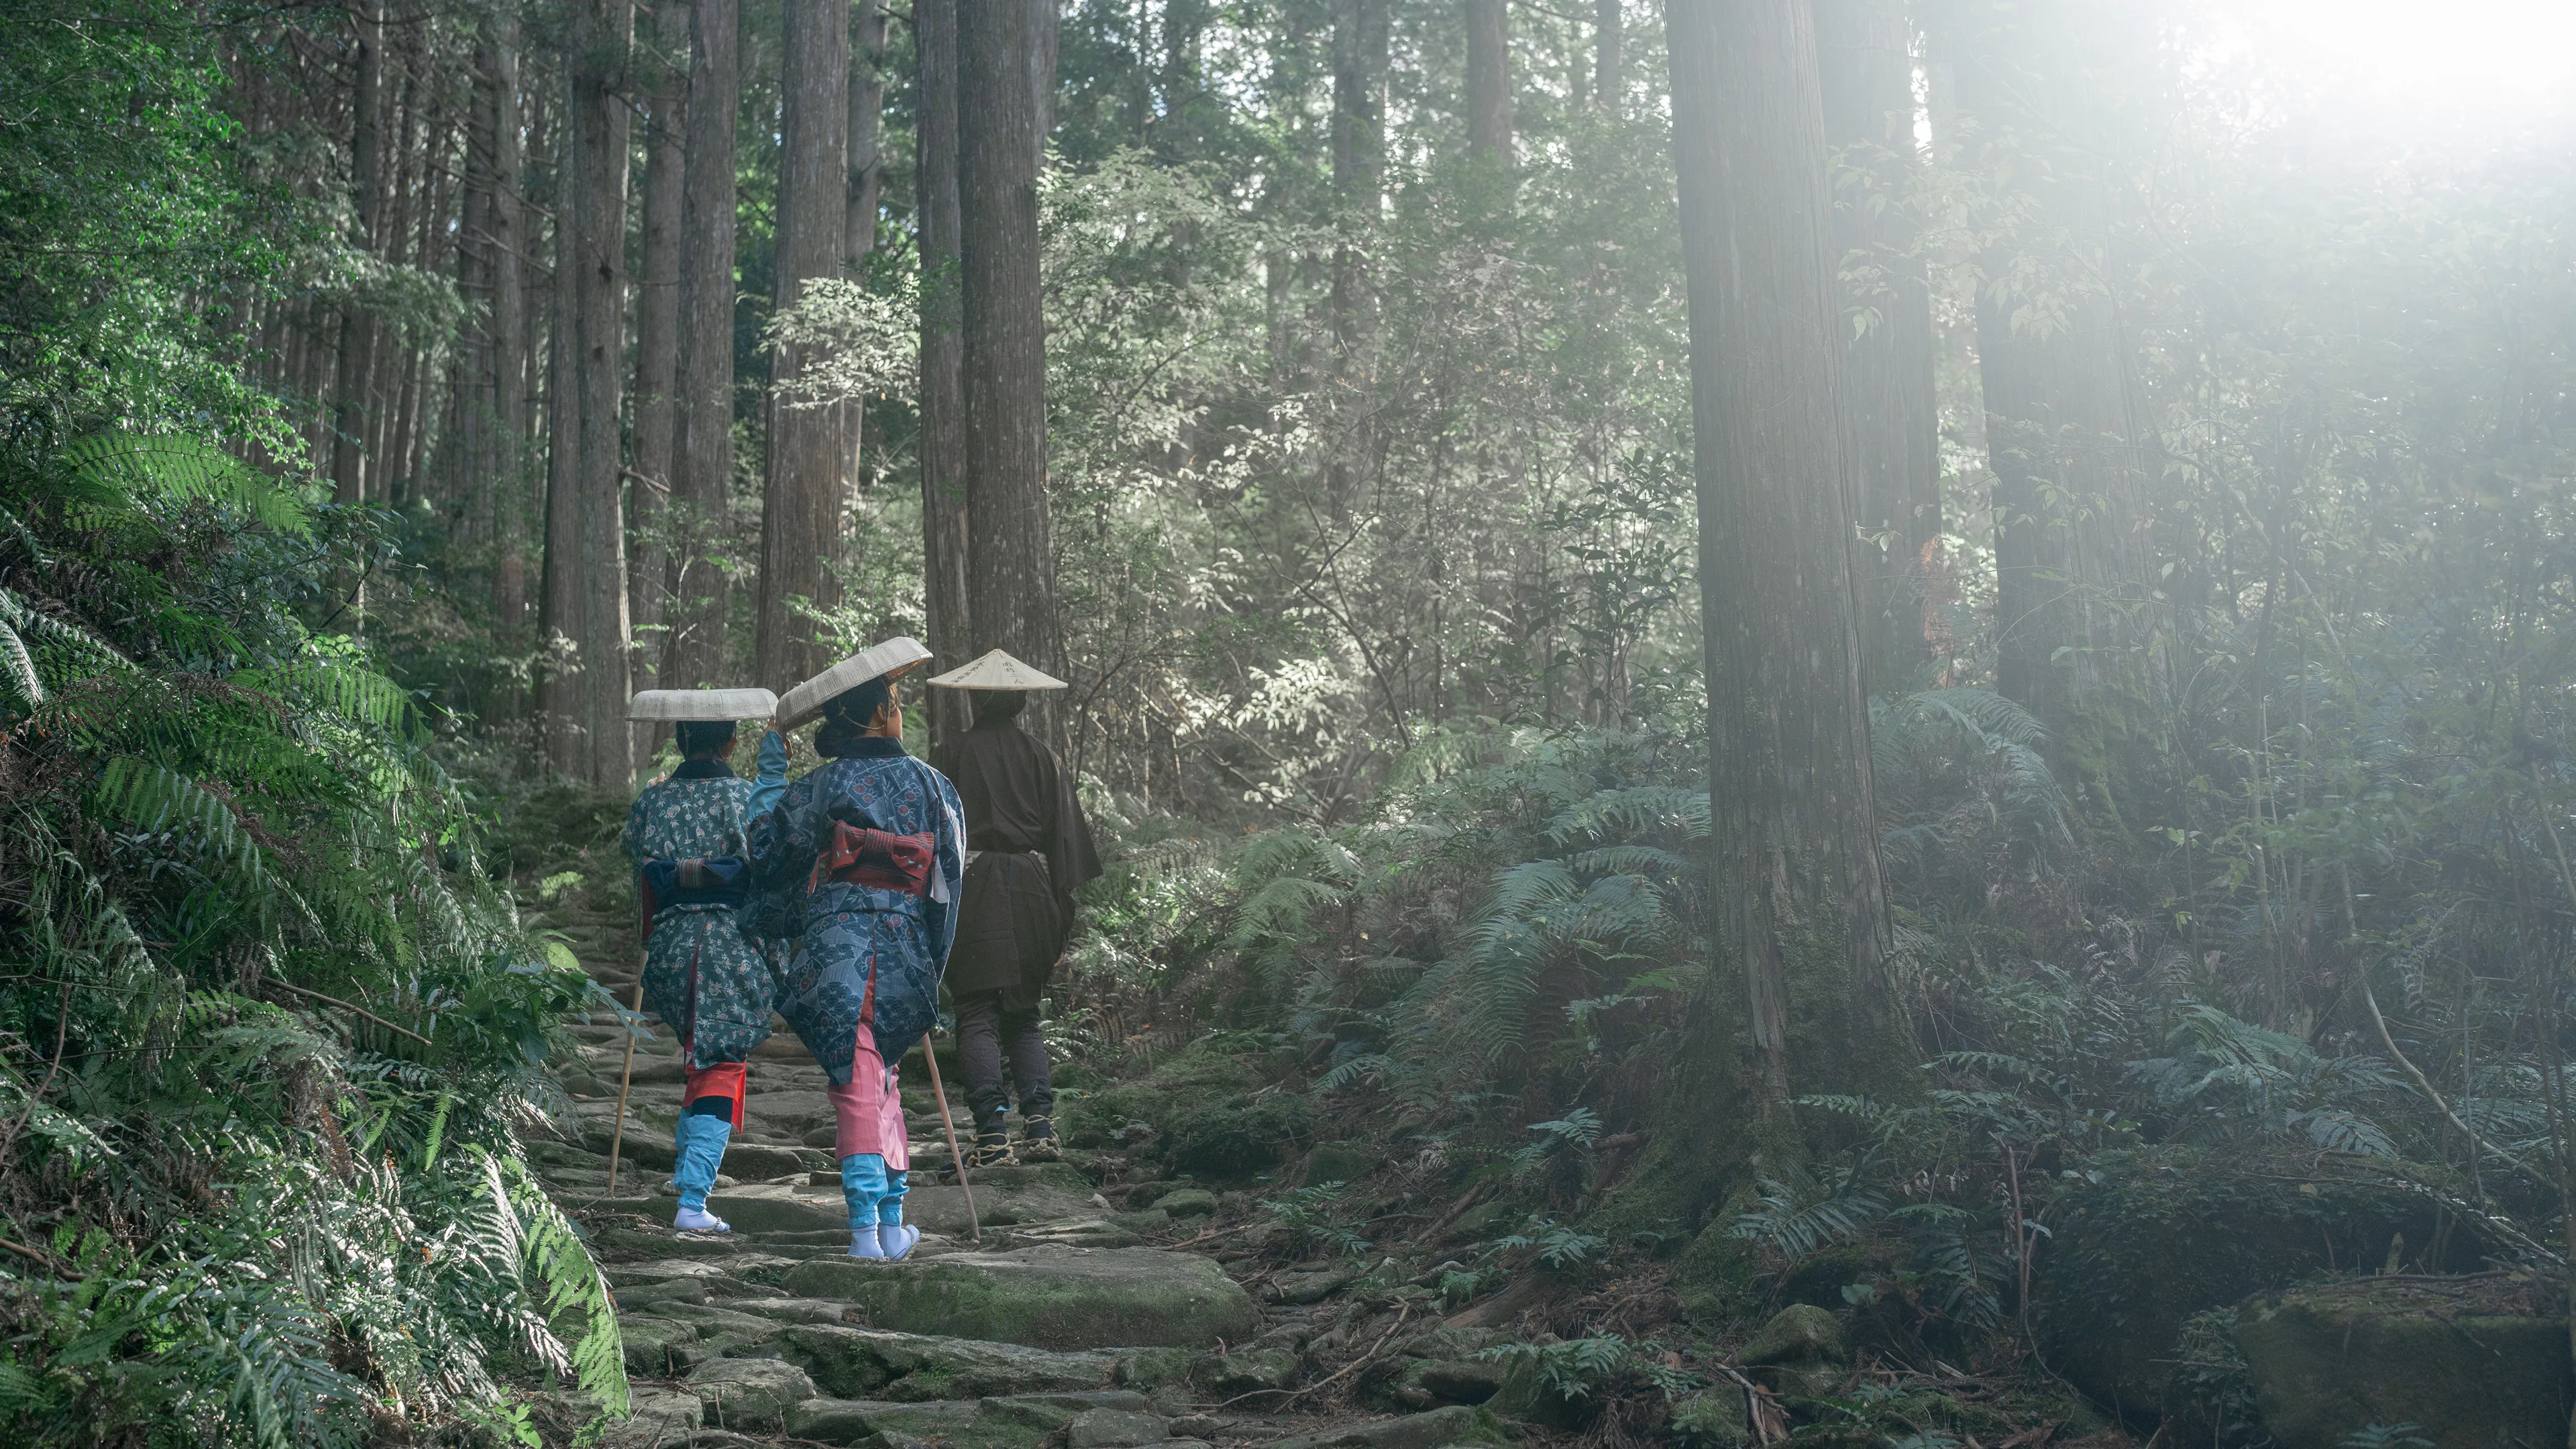 เดินไปตามเส้นทางมาโกเสะบนเส้นทางคุมาโนะ โคโดะ แหล่งมรดกโลกขององค์การยูเนสโก ในชุดเดินทางแบบดั้งเดิม